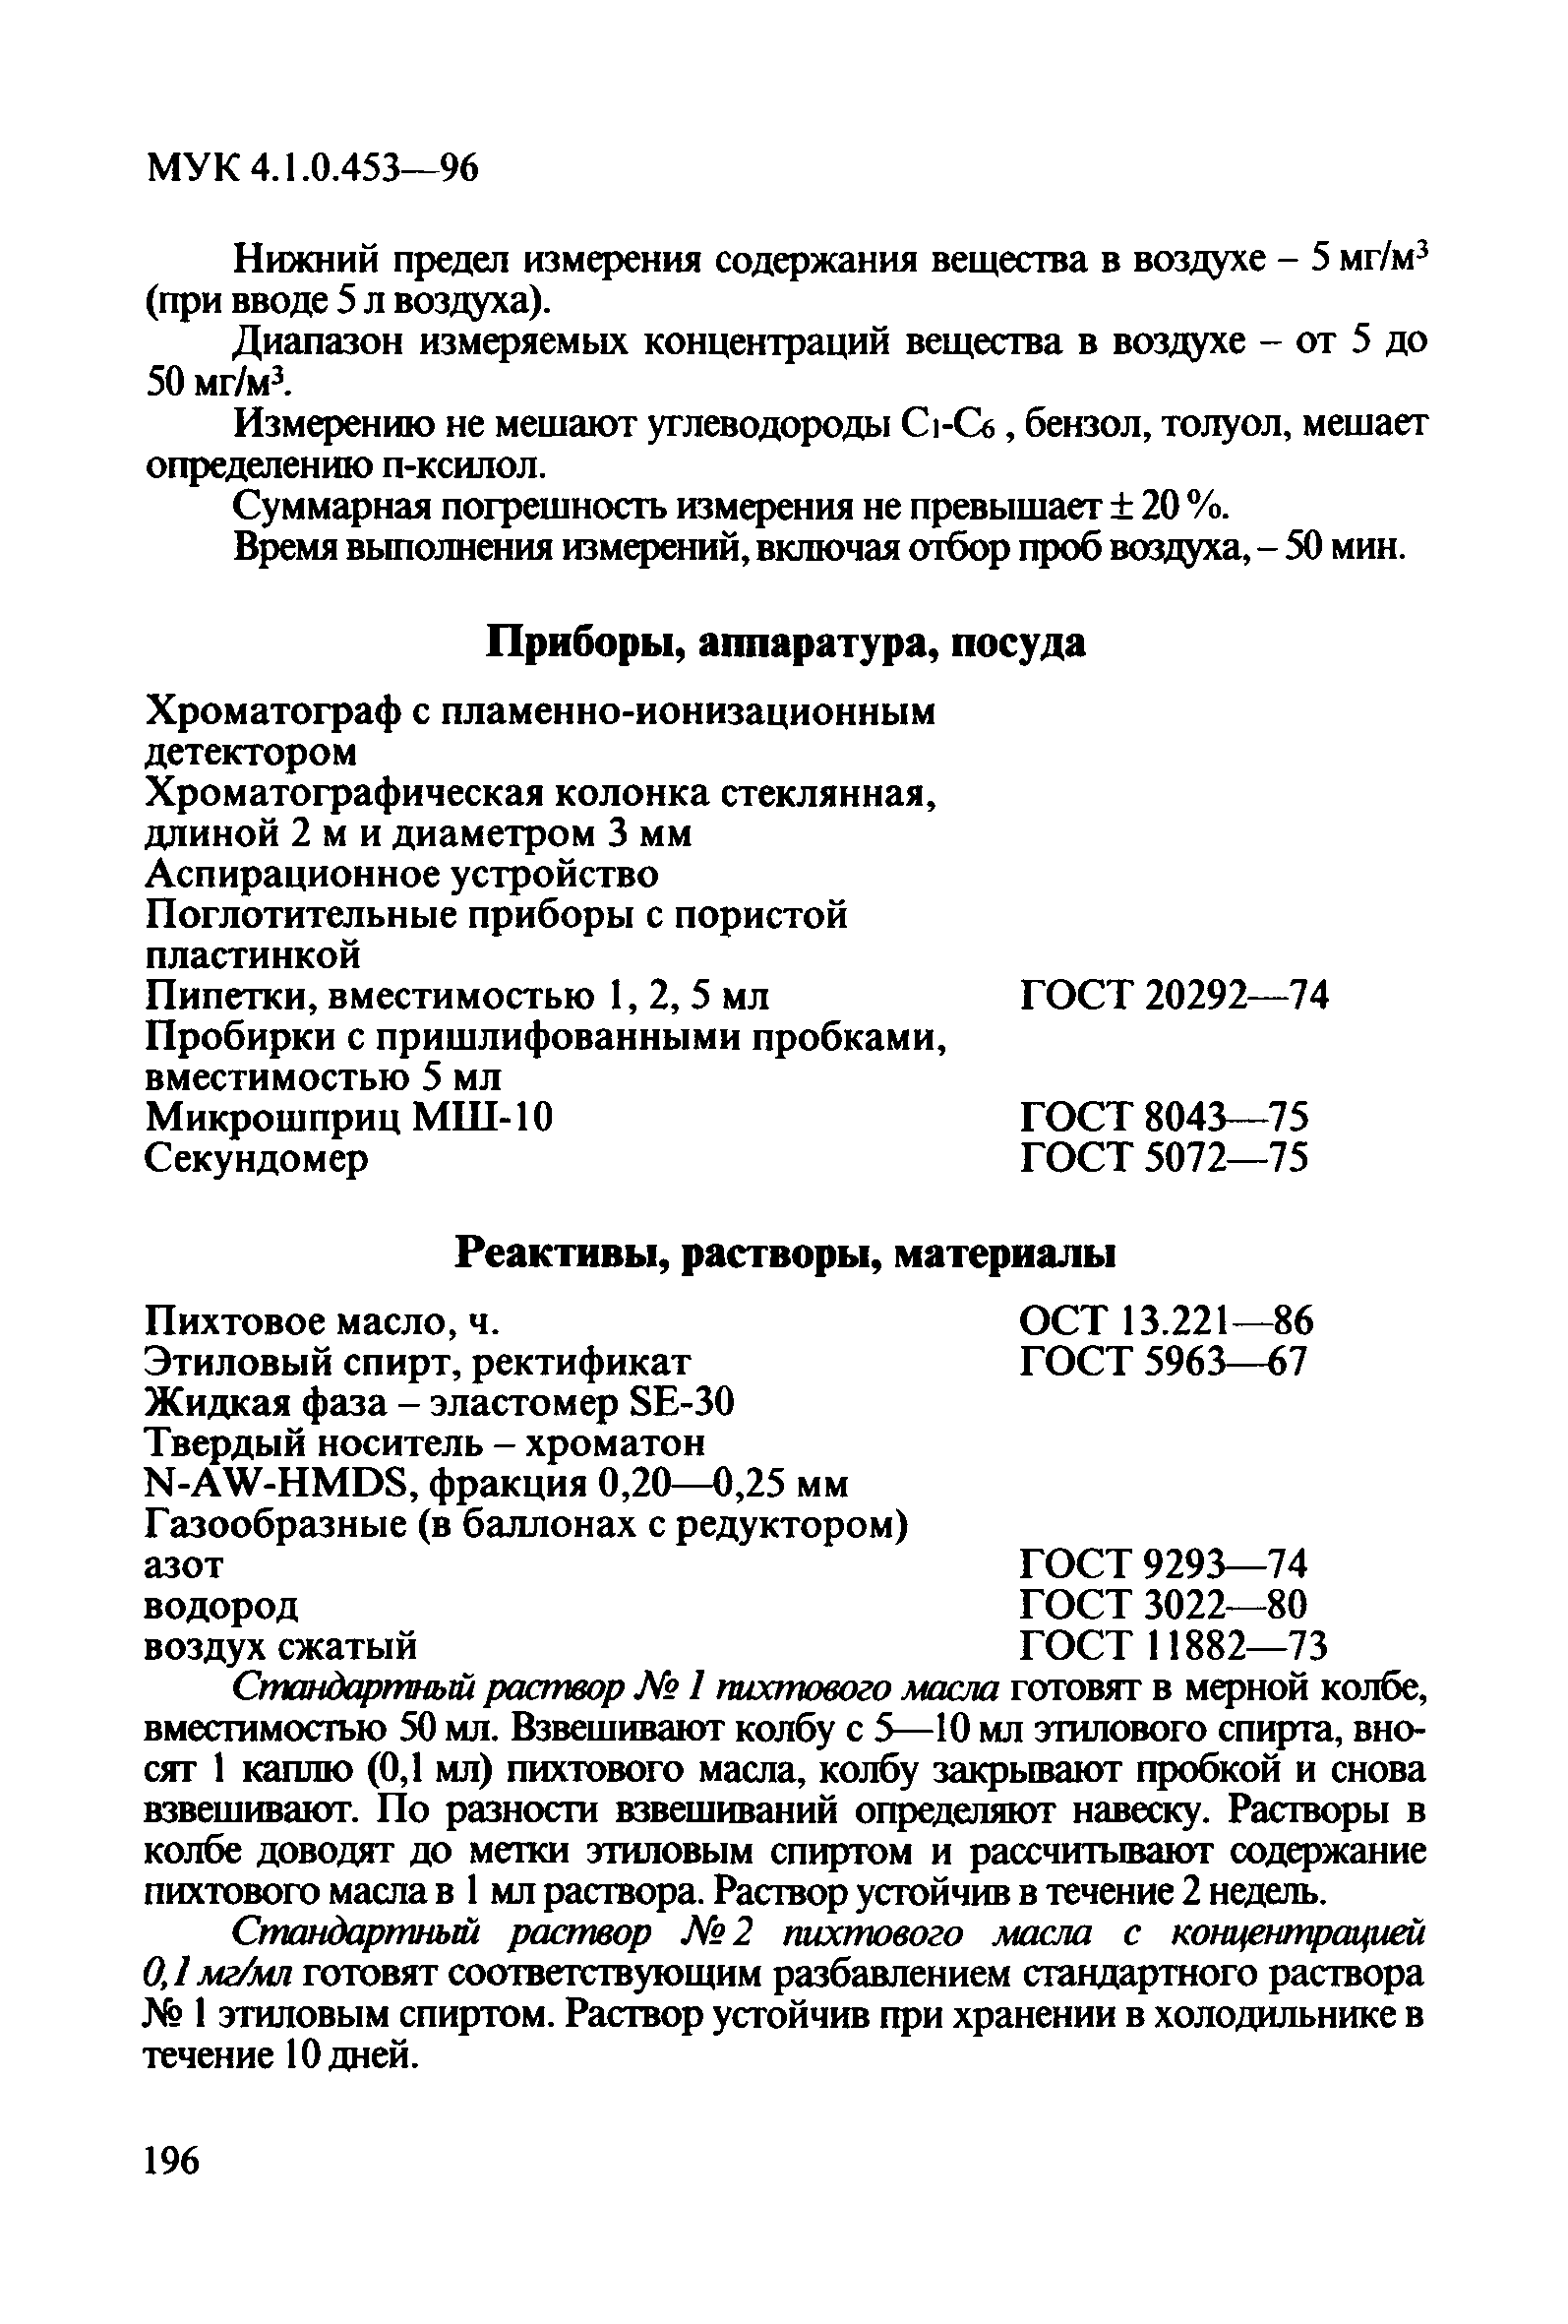 МУК 4.1.0.453-96